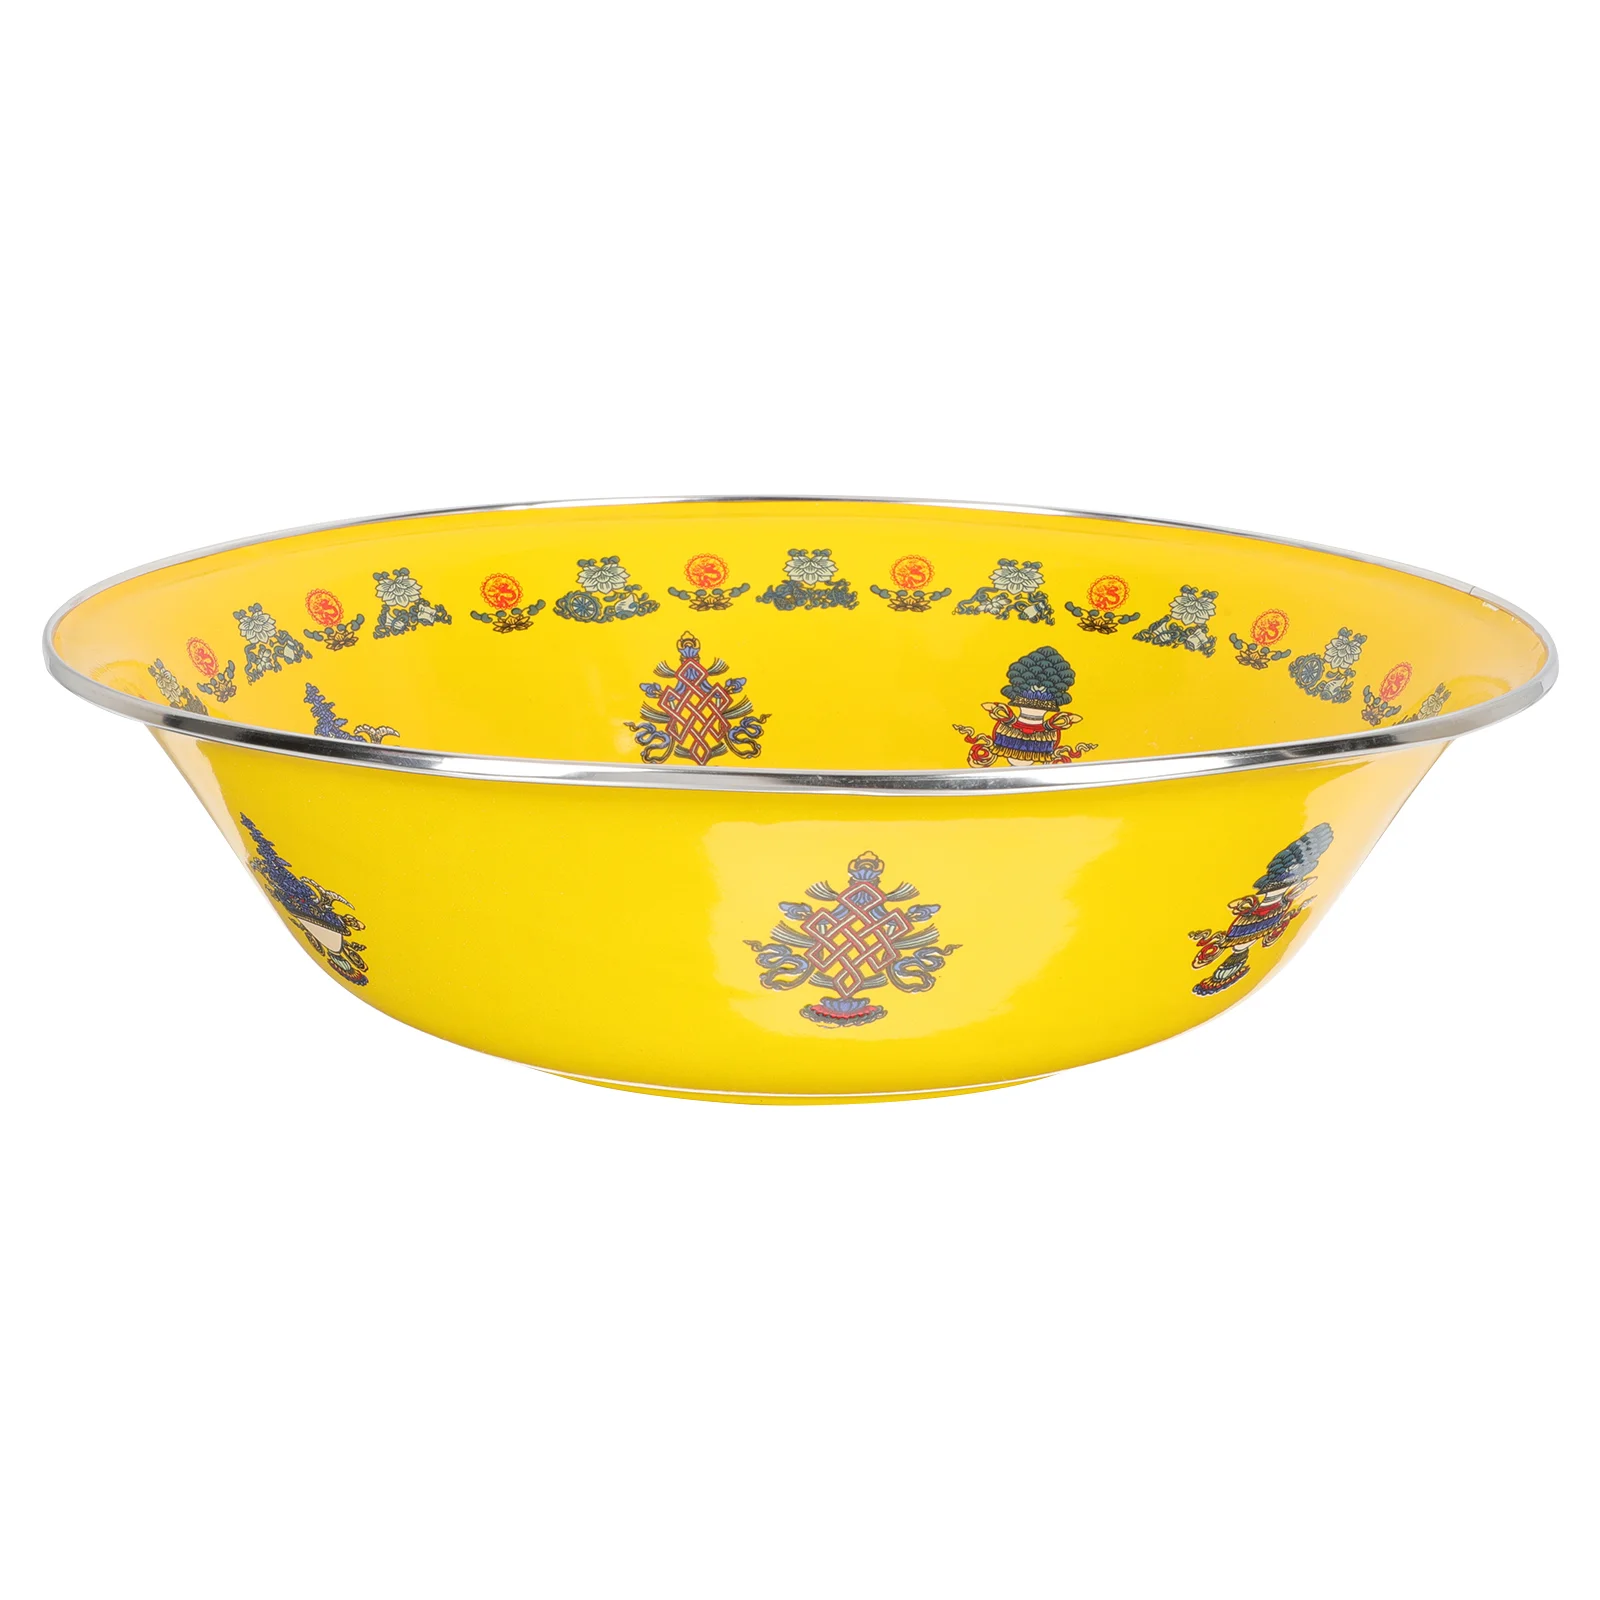 

Bowl Enamel Basin Mixing Bowls Vintage Enamelware Soup Wash Storage Plates Retro Pitcher Salad Enameled Dishes And Washing